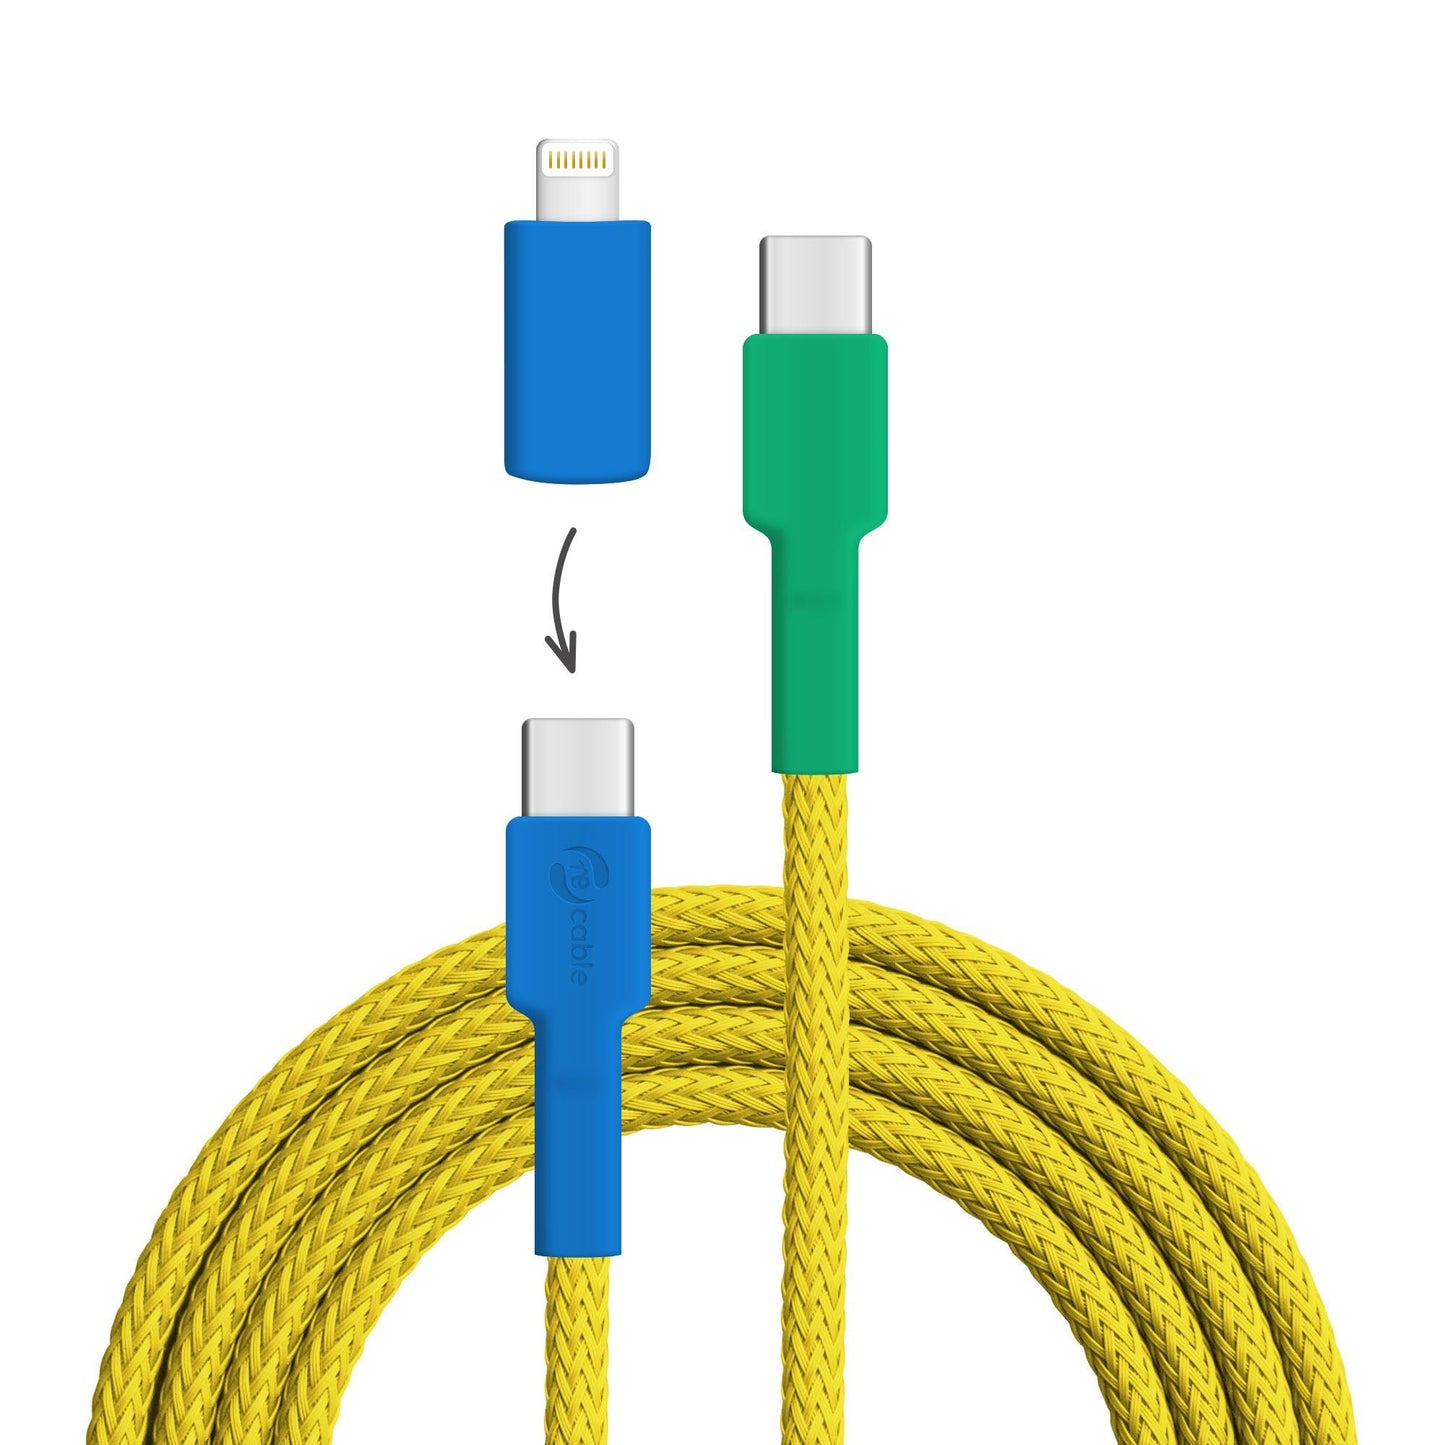 USB-Kabel, Design: Gelbbrustara, Anschlüsse: USB C auf USB C mit Lightning Adapter (nicht verbunden)